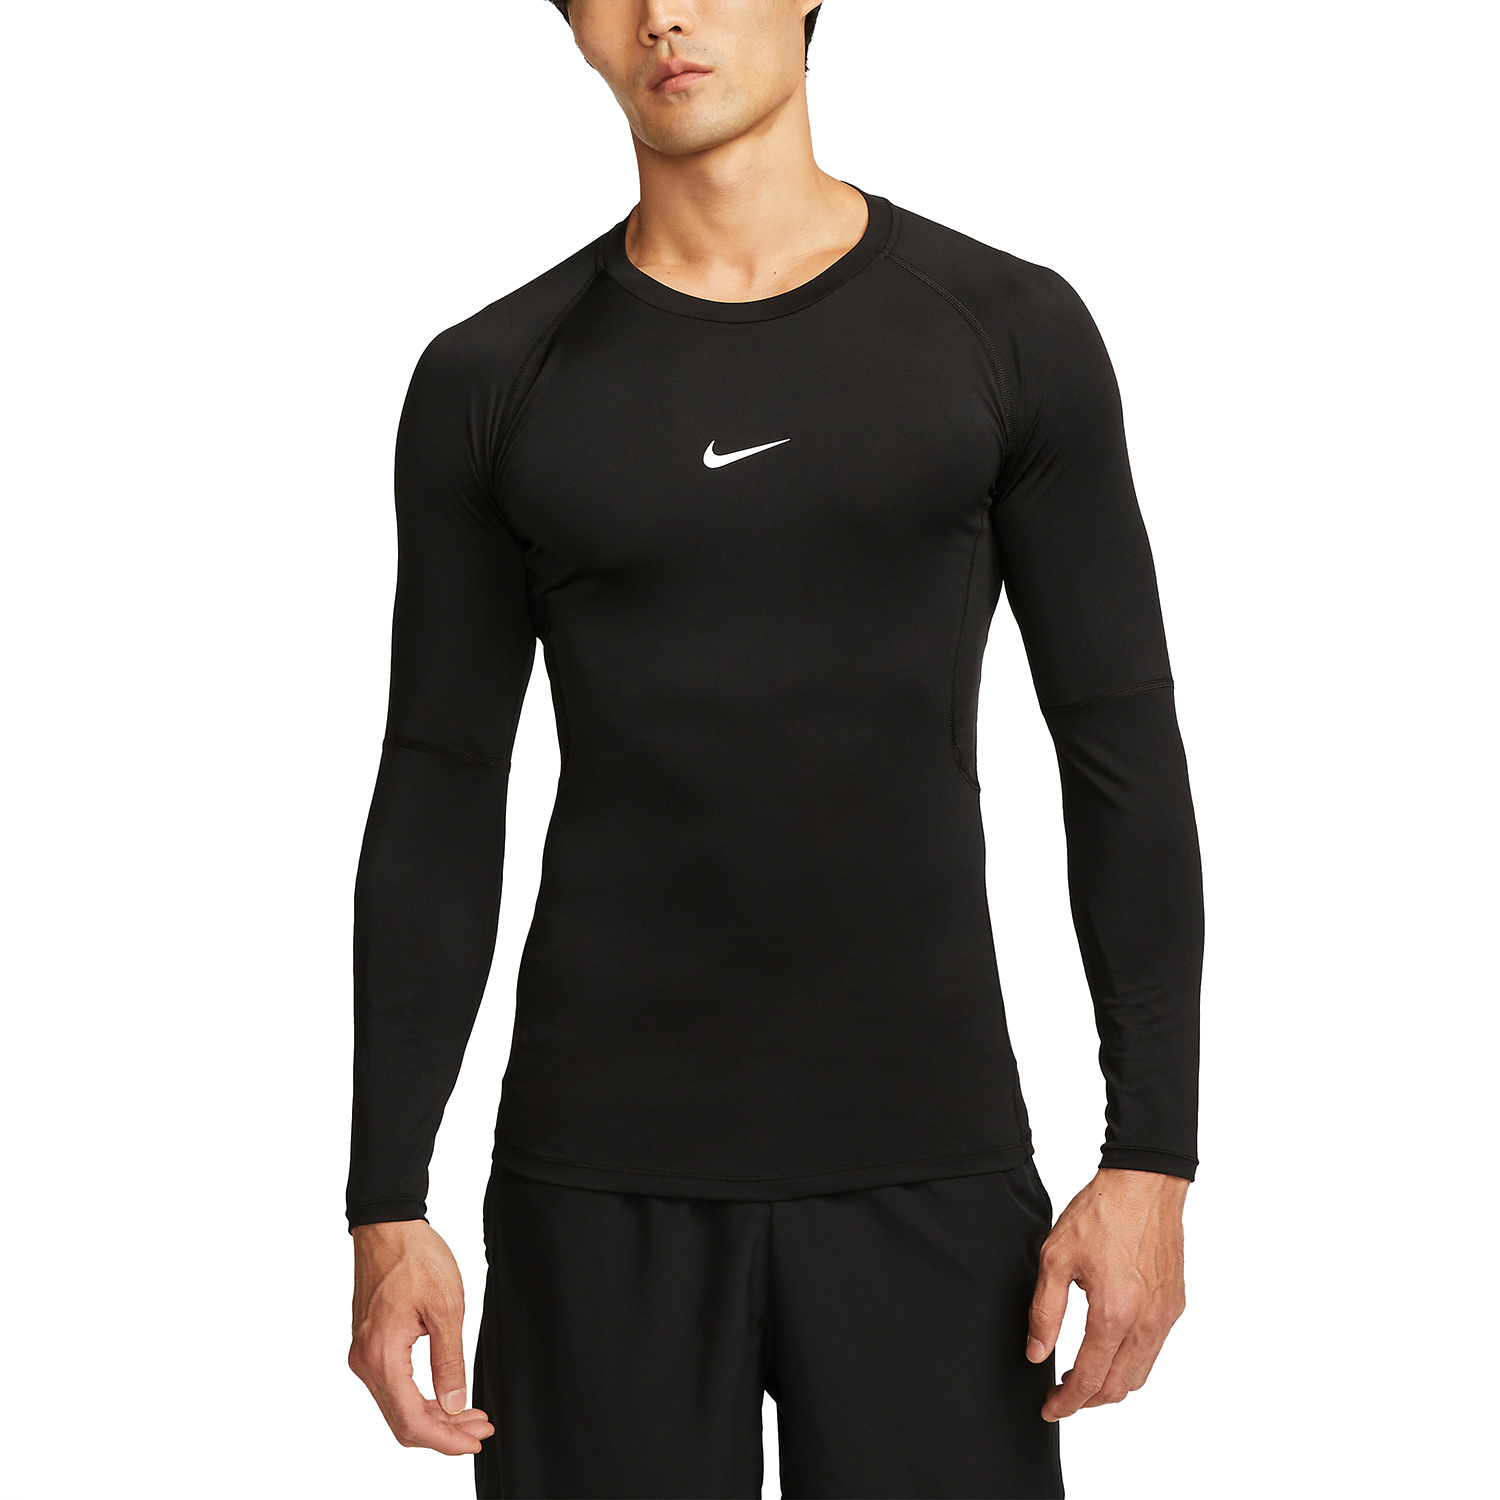 Nike Dri-FIT Logo Men's Training Shirt - Black/White